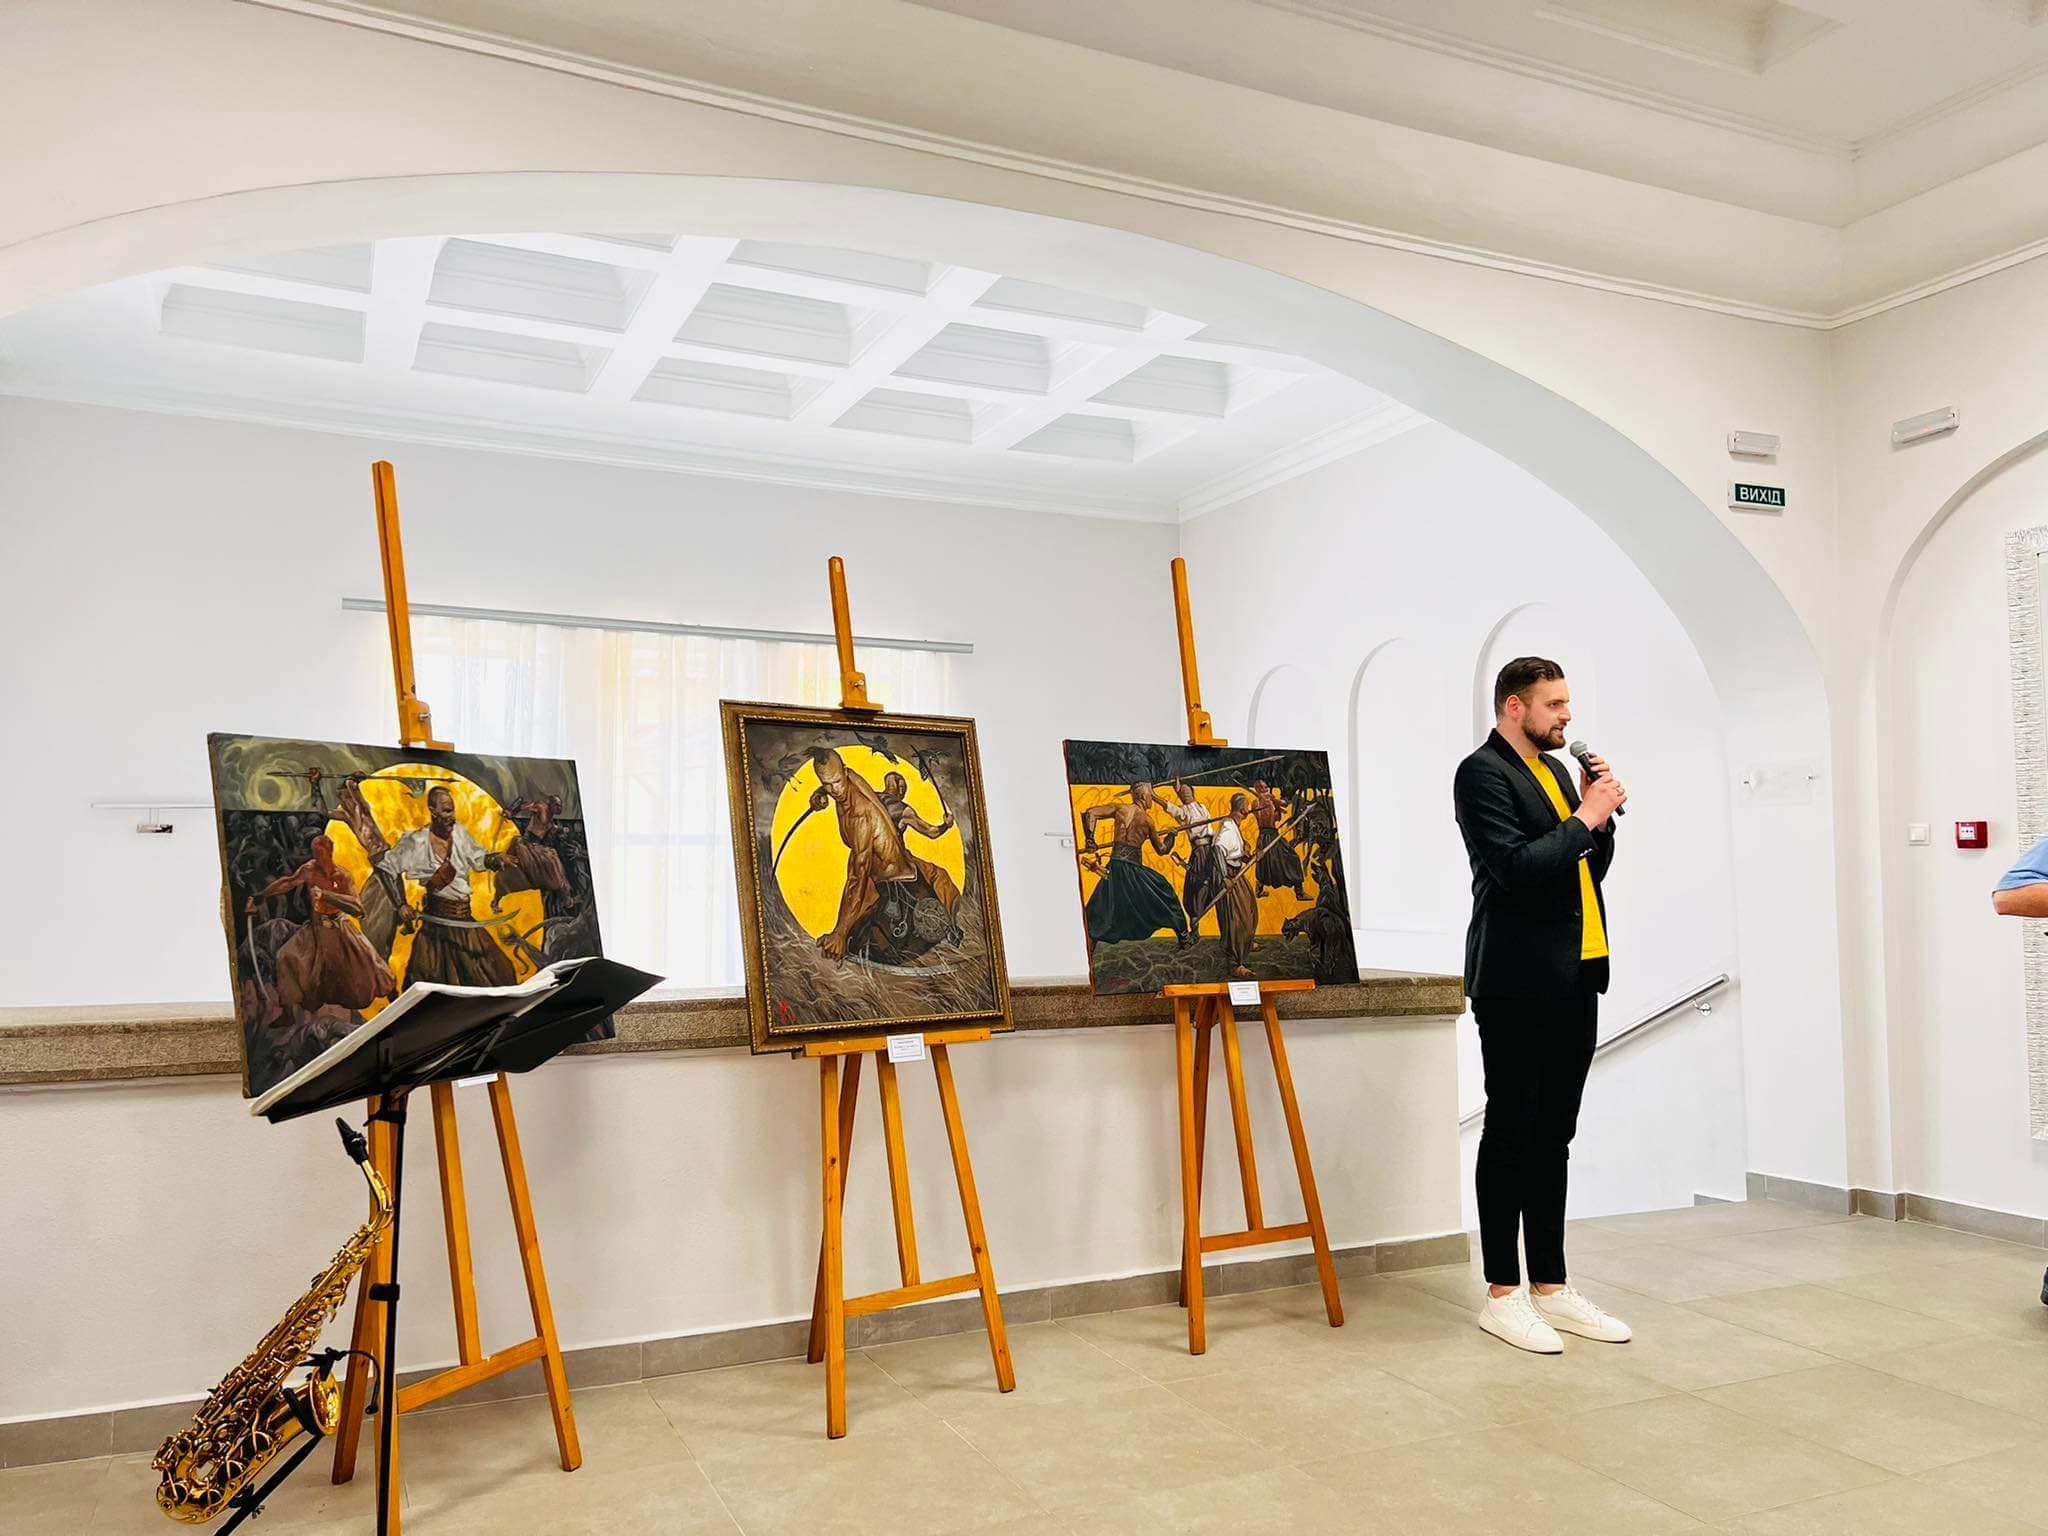 Война глазами детей. Сегодня во Дворце культуры и искусств открылась выставка картин, посвященных войне. 